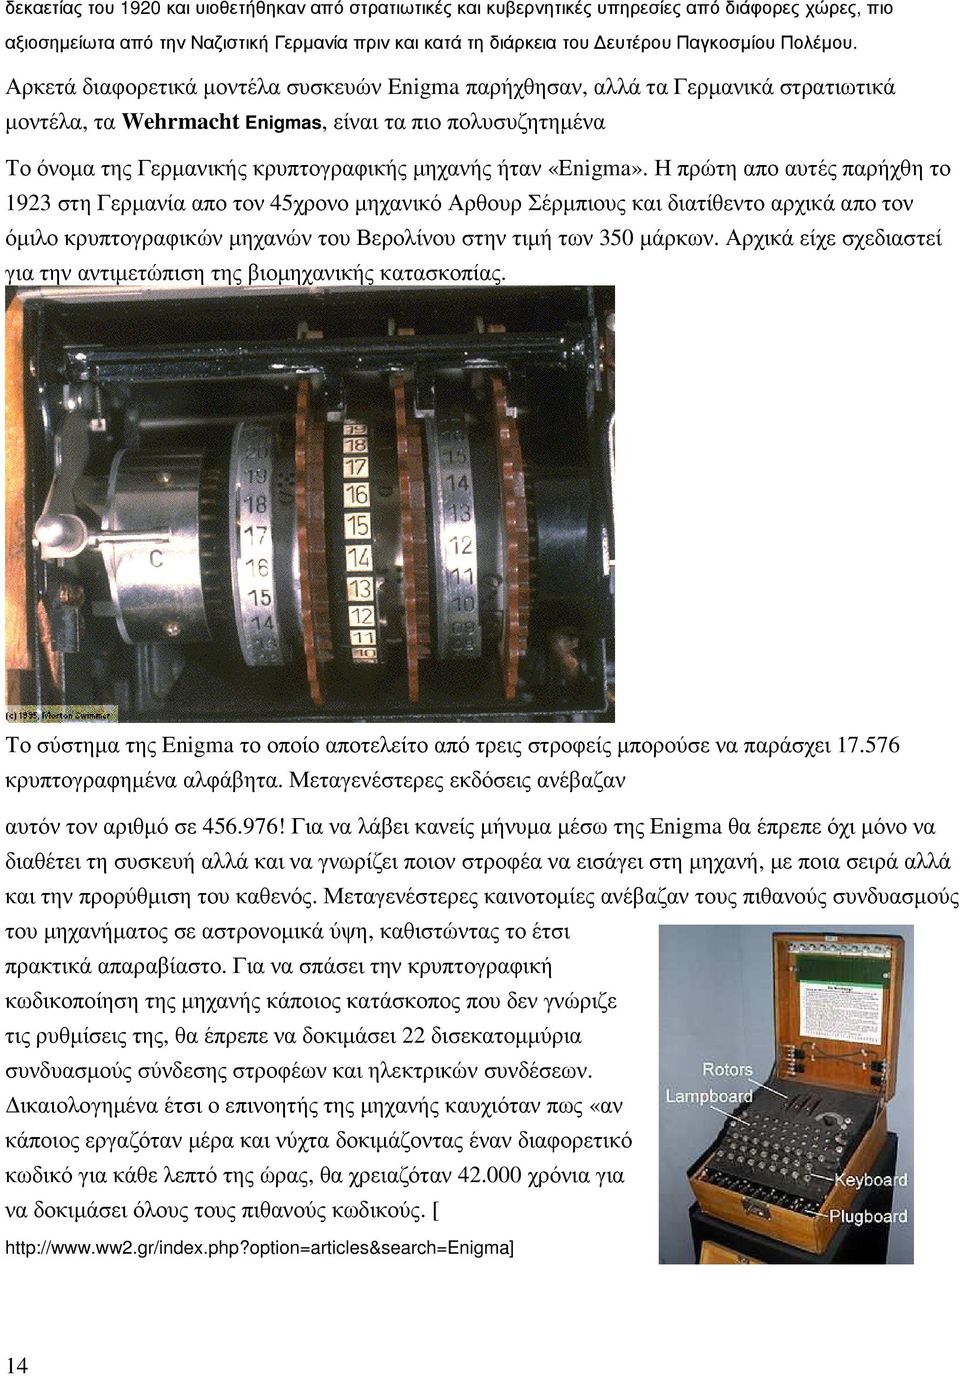 Αρκετά διαφορετικά µοντέλα συσκευών Enigma παρήχθησαν, αλλά τα Γερµανικά στρατιωτικά µοντέλα, τα Wehrmacht Enigmas, είναι τα πιο πολυσυζητηµένα Το όνοµα της Γερµανικής κρυπτογραφικής µηχανής ήταν